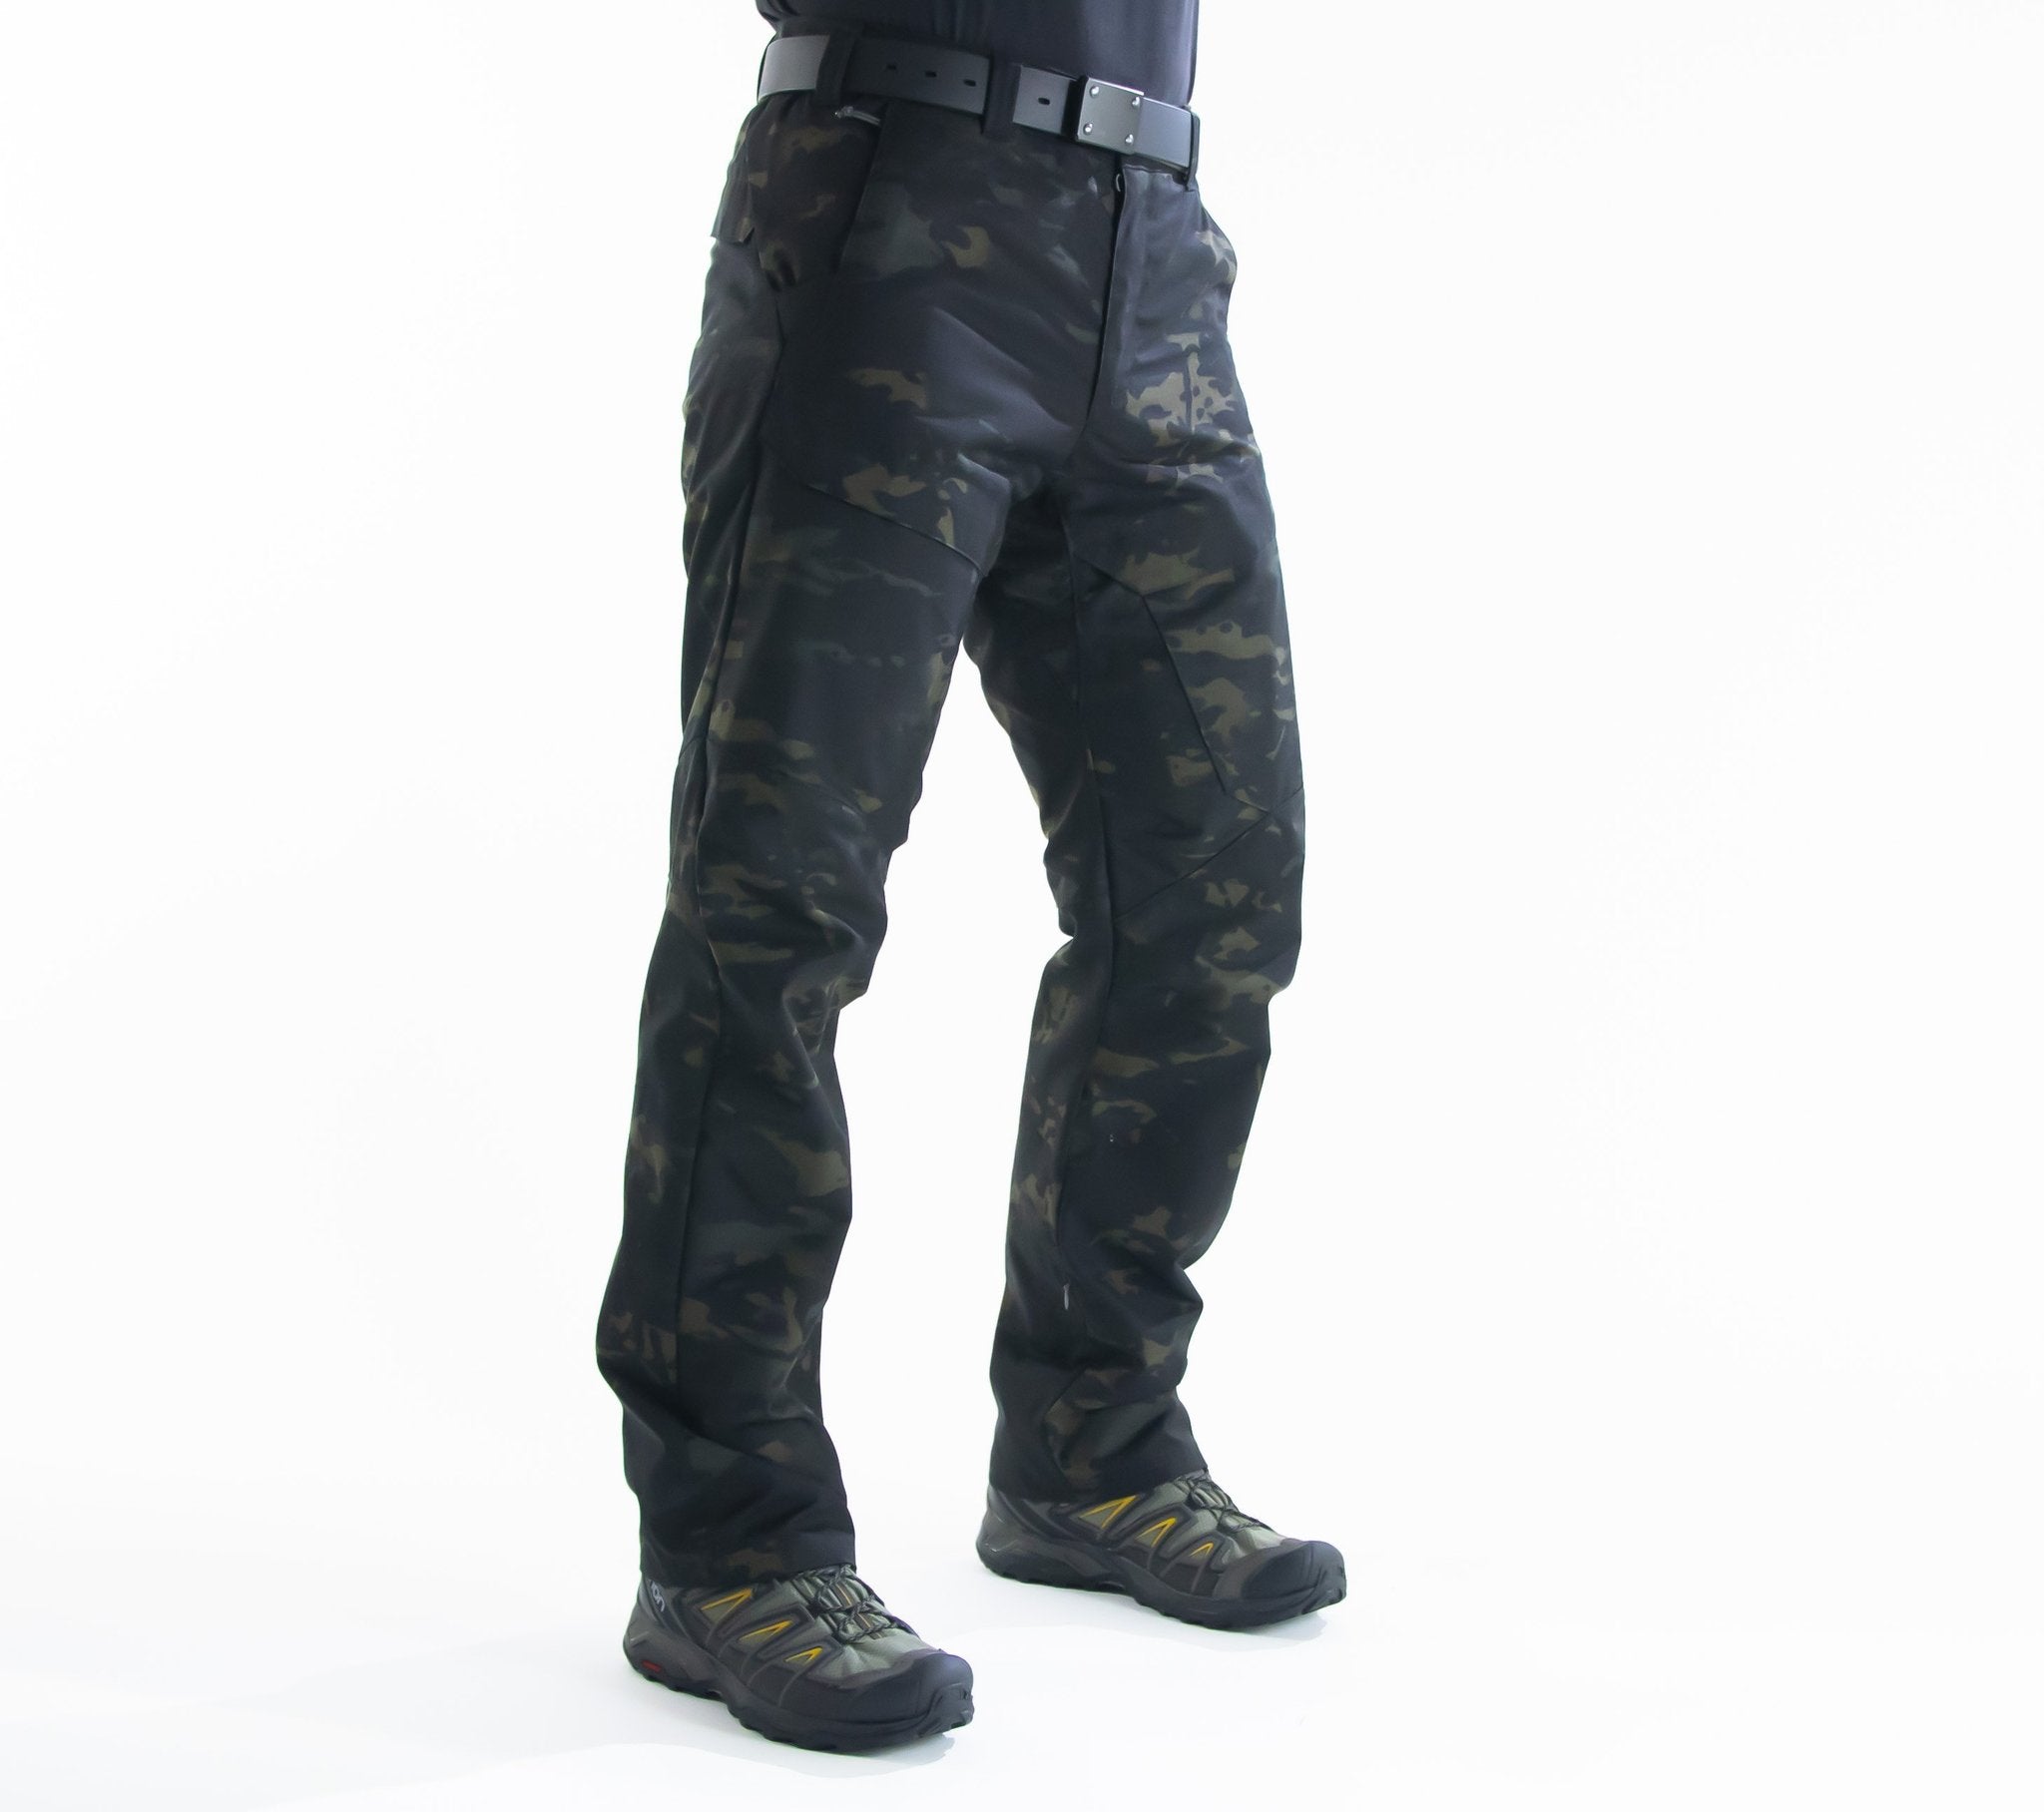 OTTE Gear Range Pants Apparel OTTE Gear 